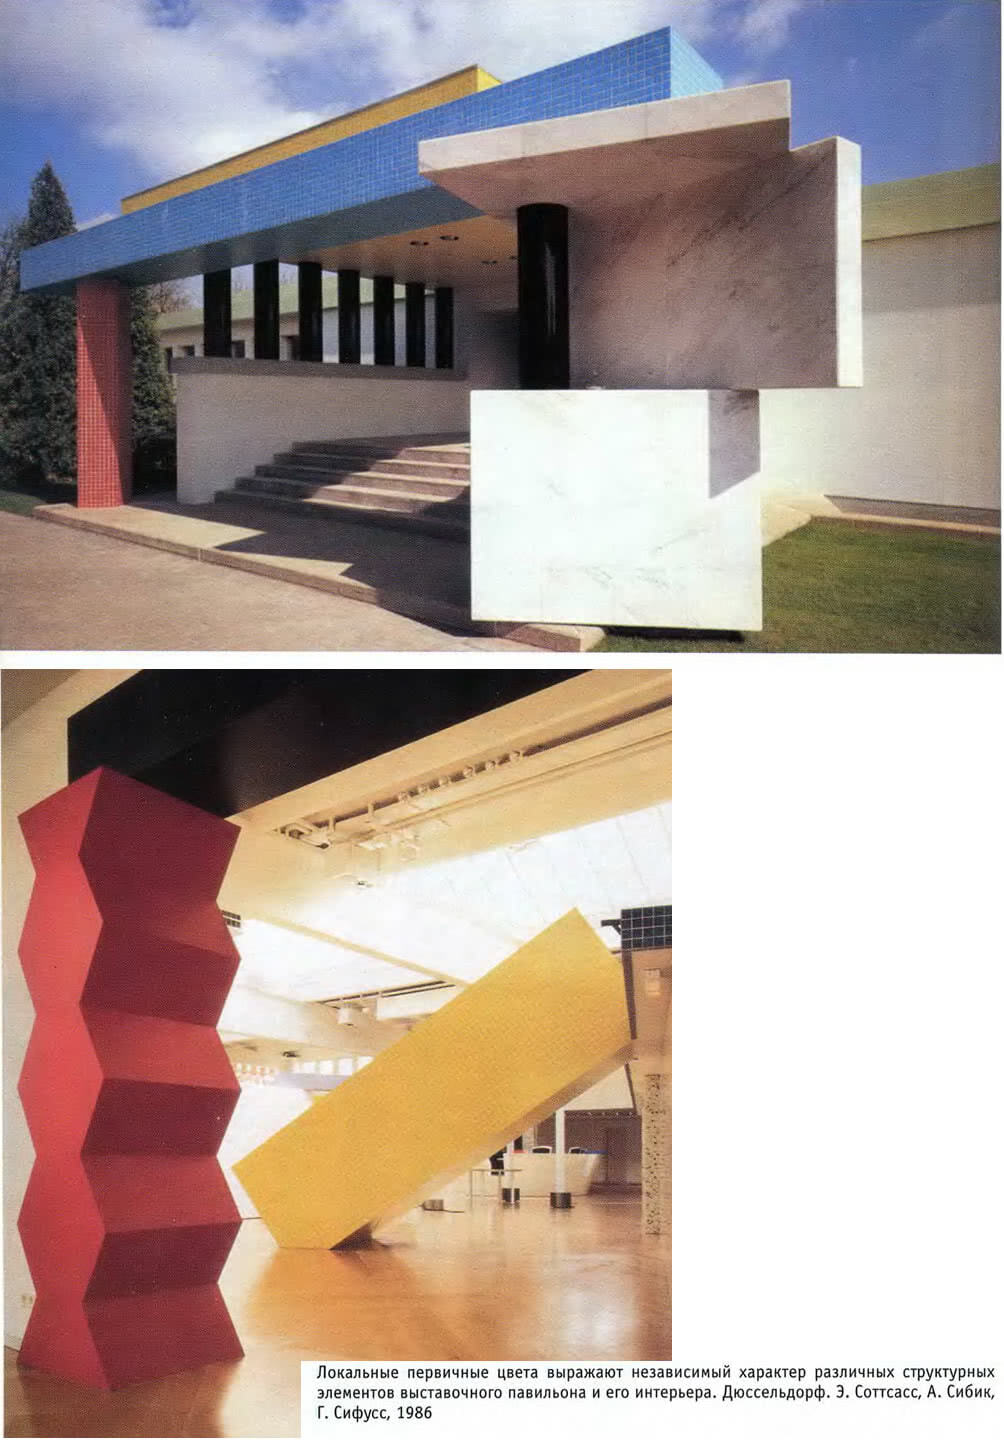 Выставочный павильон и его интерьер. Дюссельдорф. Э. Соттсасс, А. Сибик, Г. Сифусс, 1986